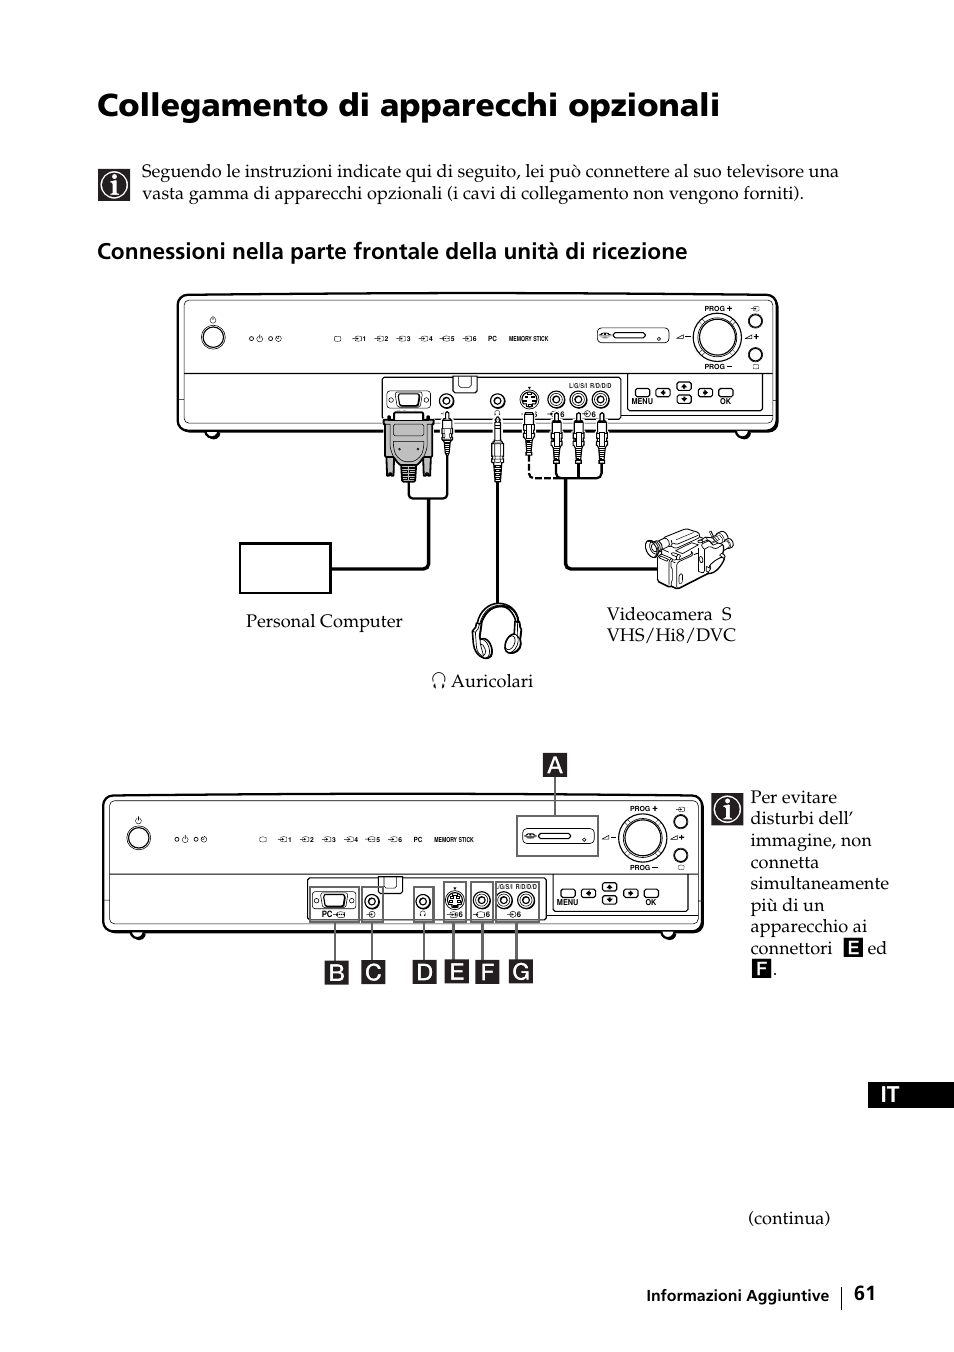 Collegamento di apparecchi opzionali, Continua), Informazioni aggiuntive | Sony KE-42MR1 Manuale d'uso | Pagina 62 / 302